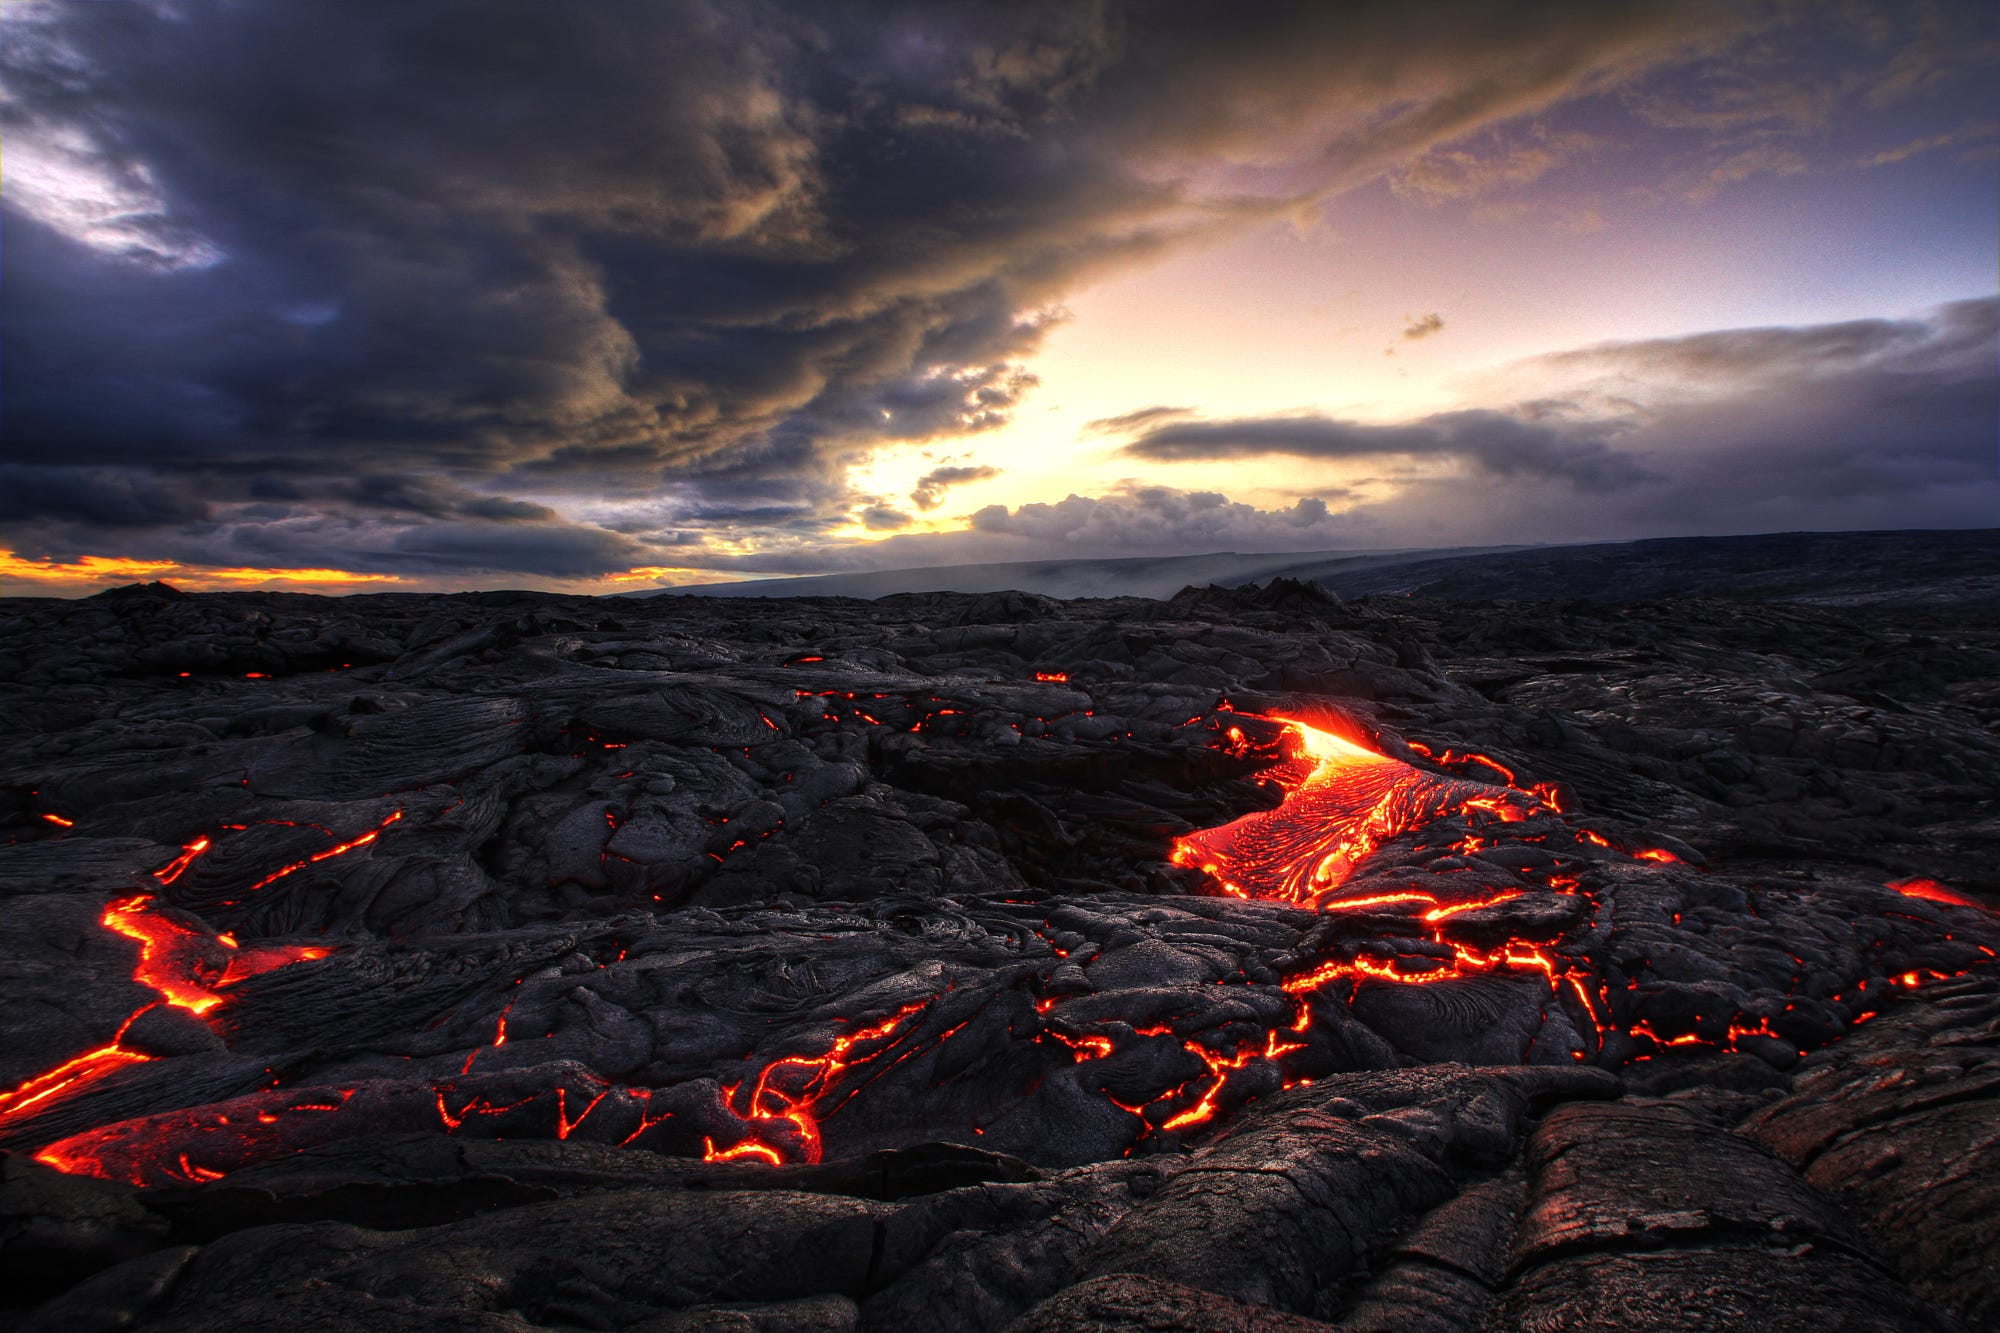 Burning lava